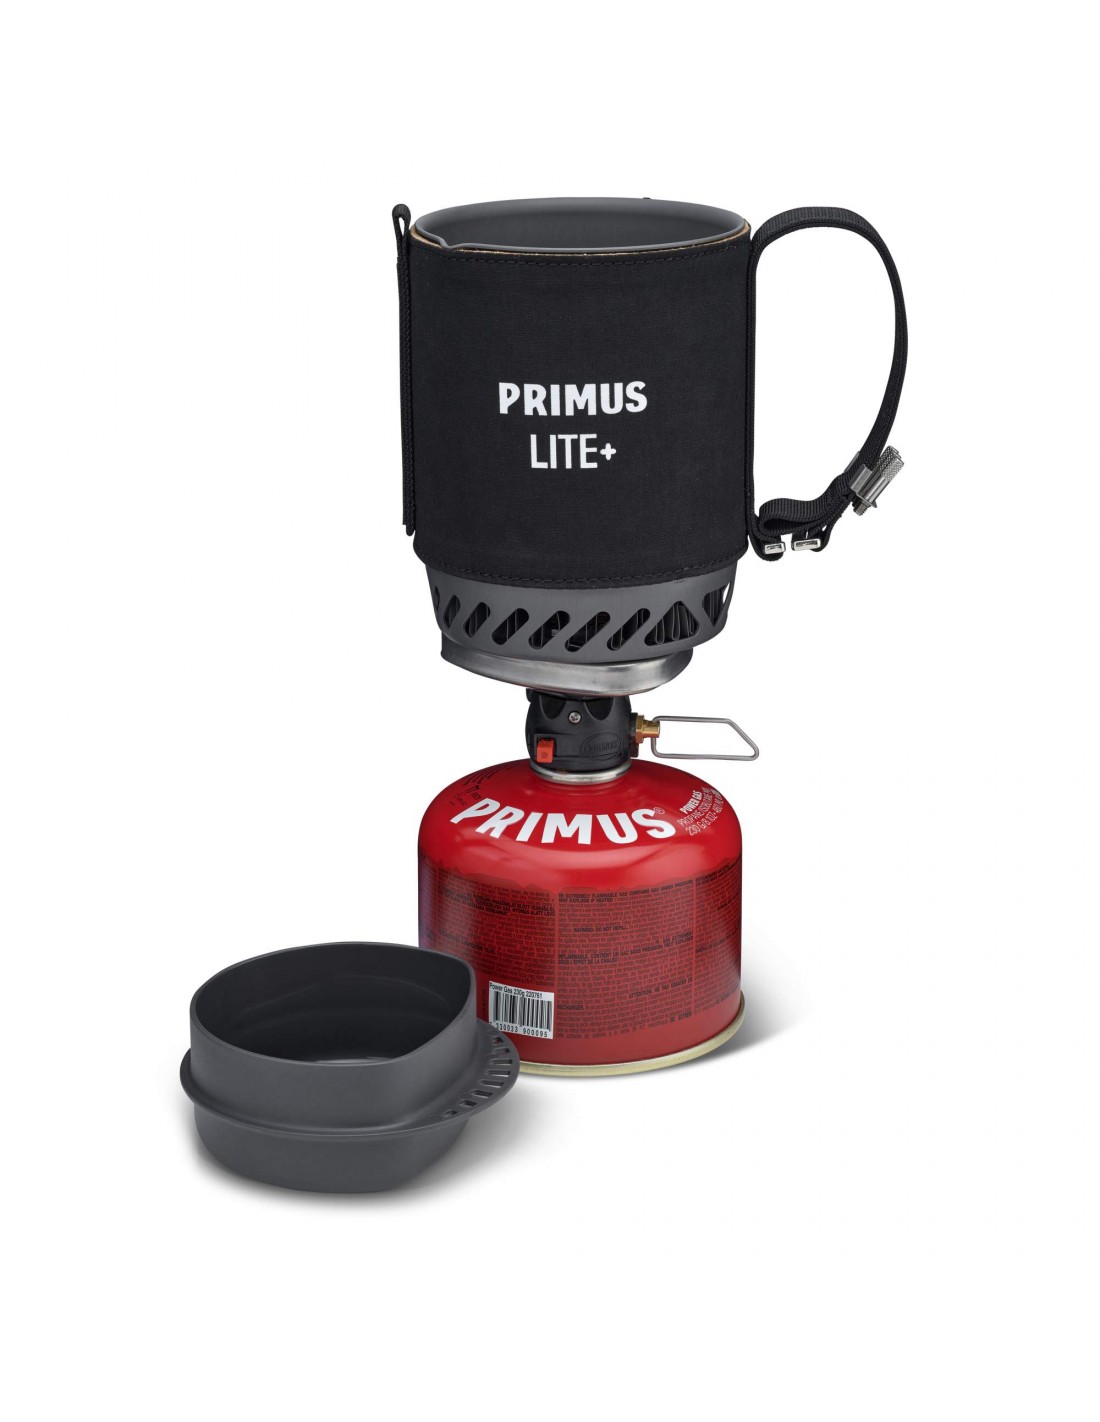 Primus Lite Plus Stove System Black Kocher Konstruktion - Kartusche darunter, Kocher Brennstoff - Butan / Propan, Kocher Variante - Einflammenkocher, von Primus